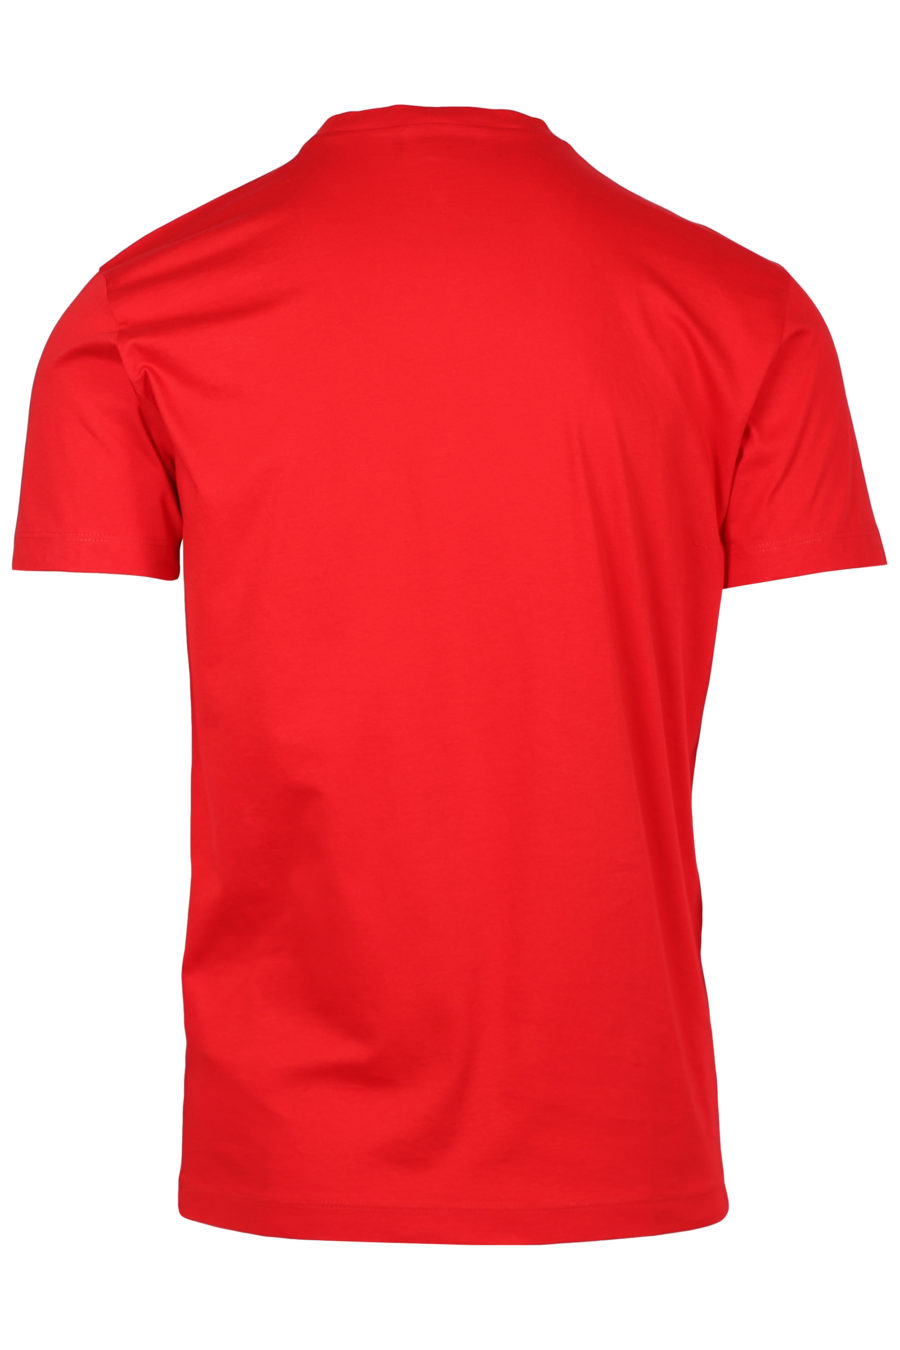 Camiseta roja con logo de la marca spray - IMG 2349